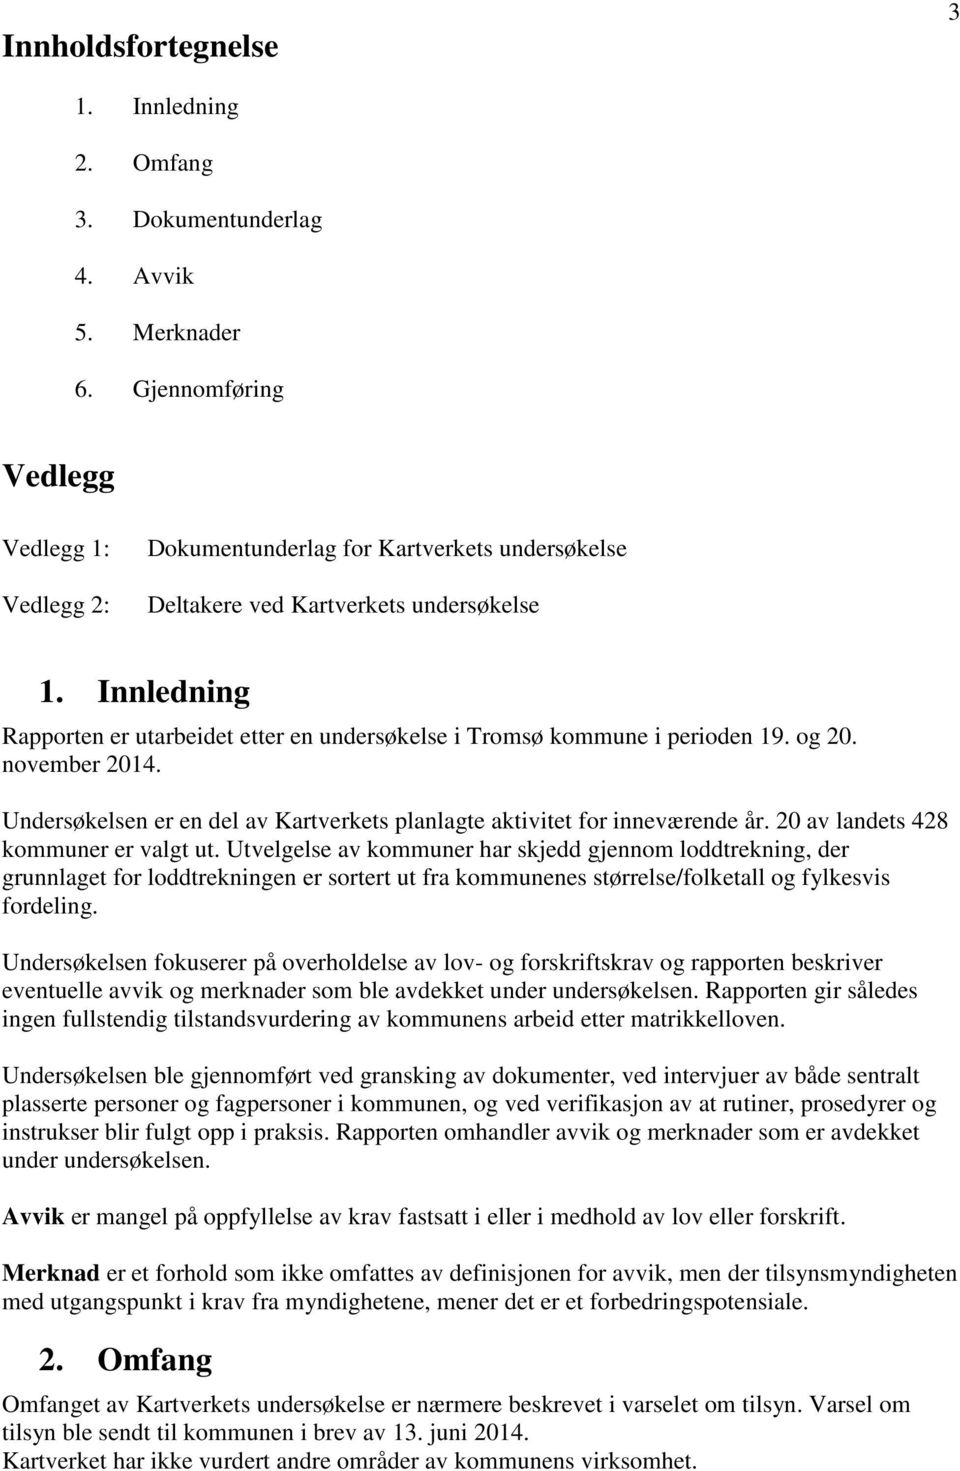 Innledning Rapporten er utarbeidet etter en undersøkelse i Tromsø kommune i perioden 19. og 20. november 2014. Undersøkelsen er en del av Kartverkets planlagte aktivitet for inneværende år.